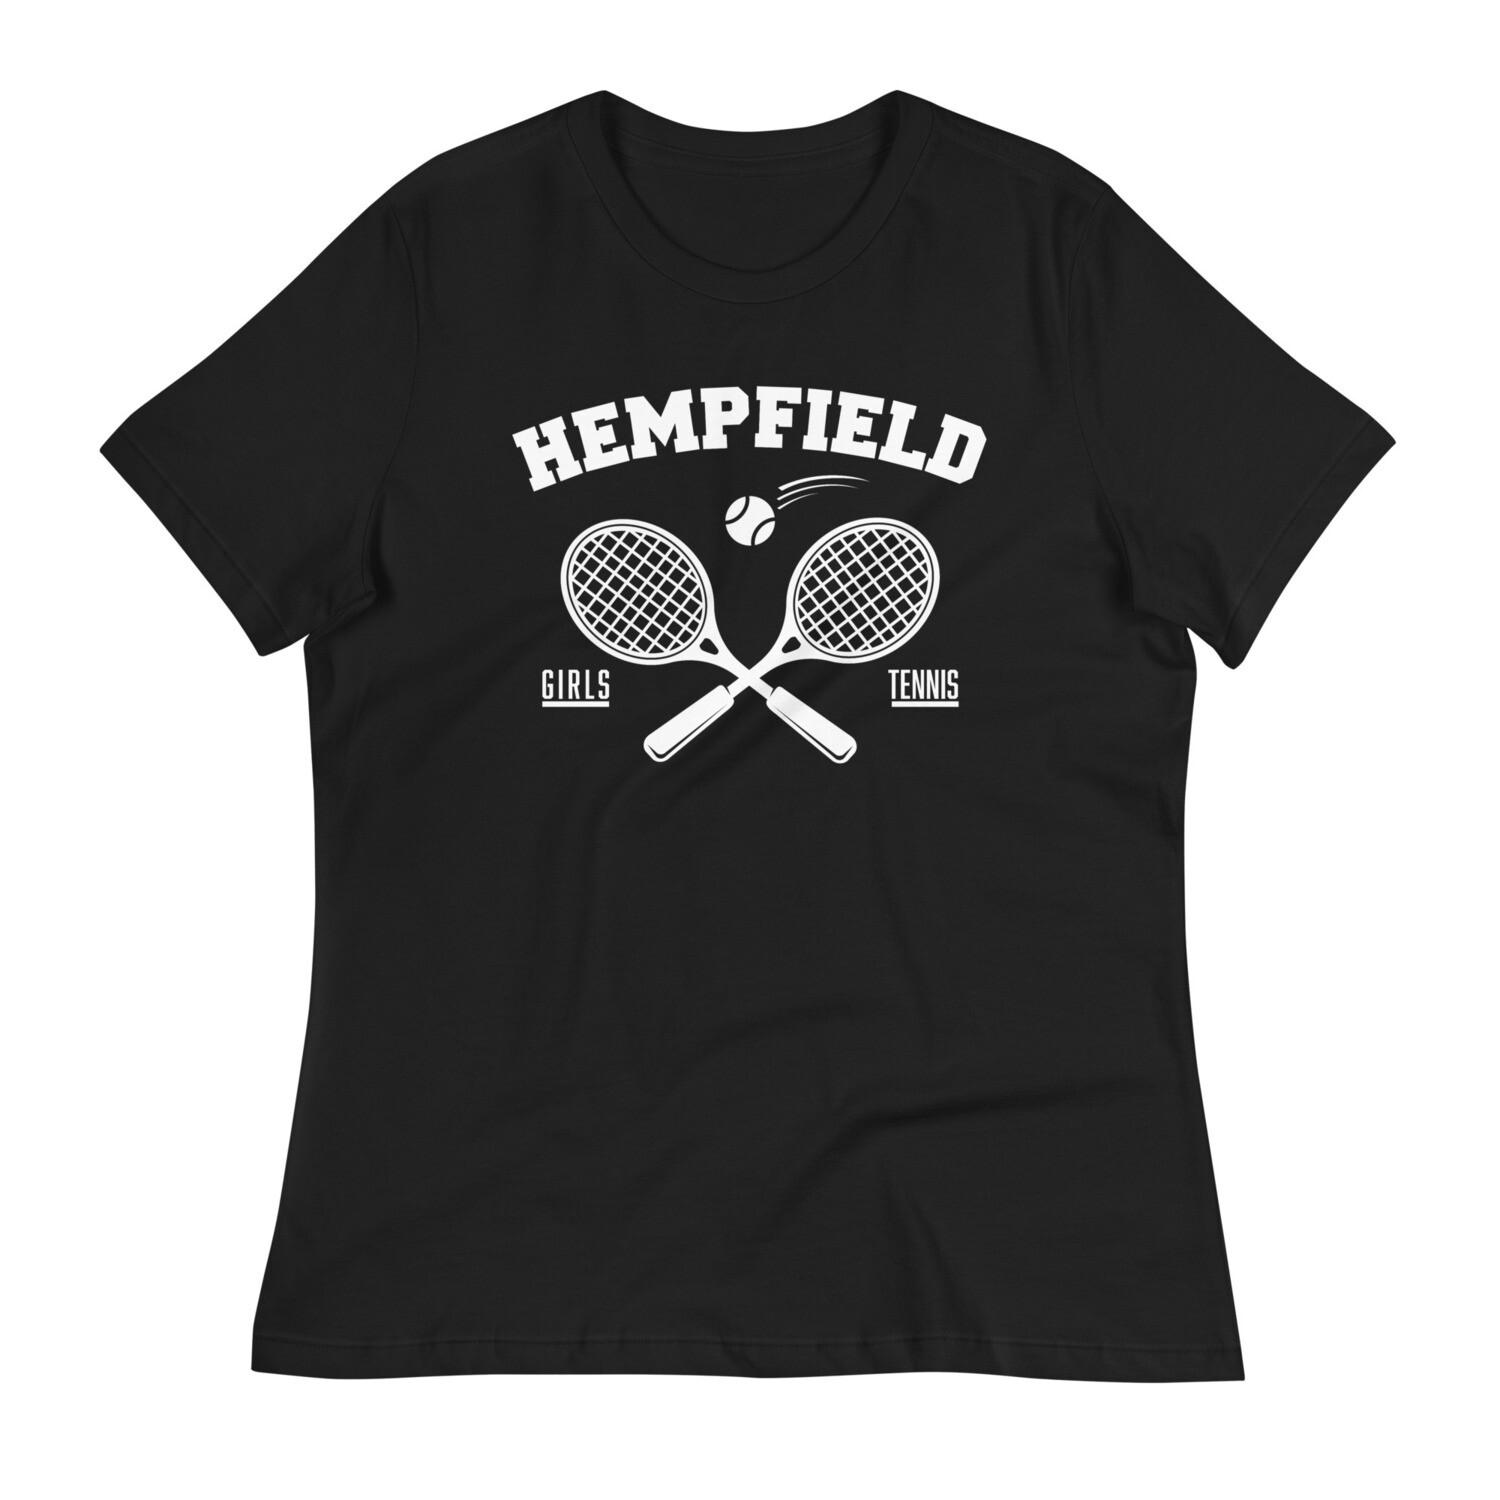 Hempfield Girls Tennis - Women's Relaxed T-Shirt